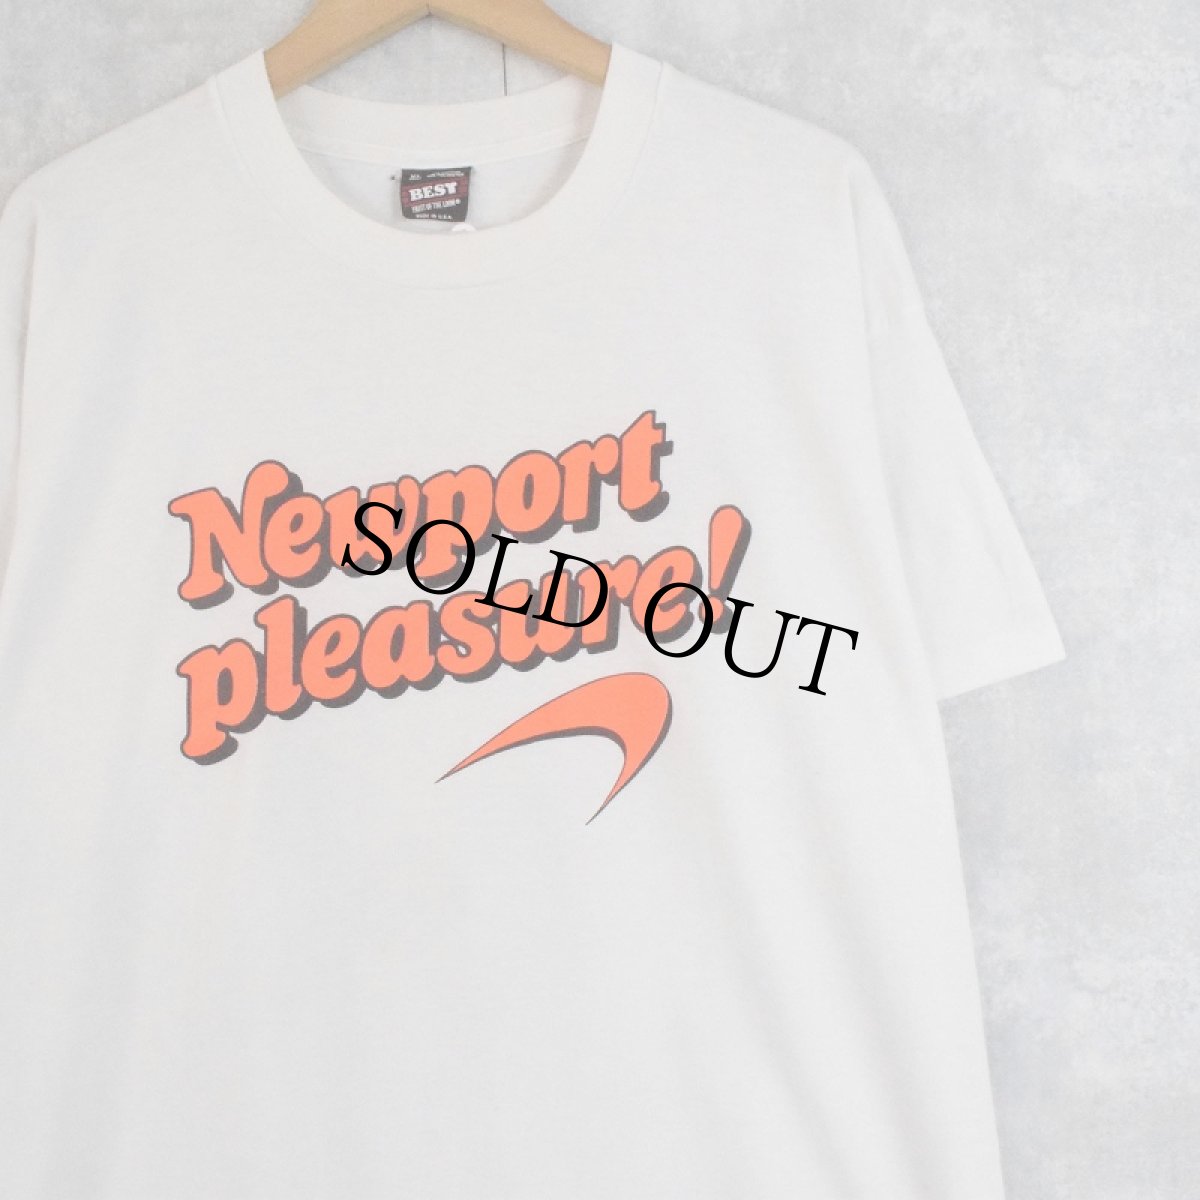 画像1: 90's USA製 "Newport pleasure!" ロゴプリントTシャツ XL (1)